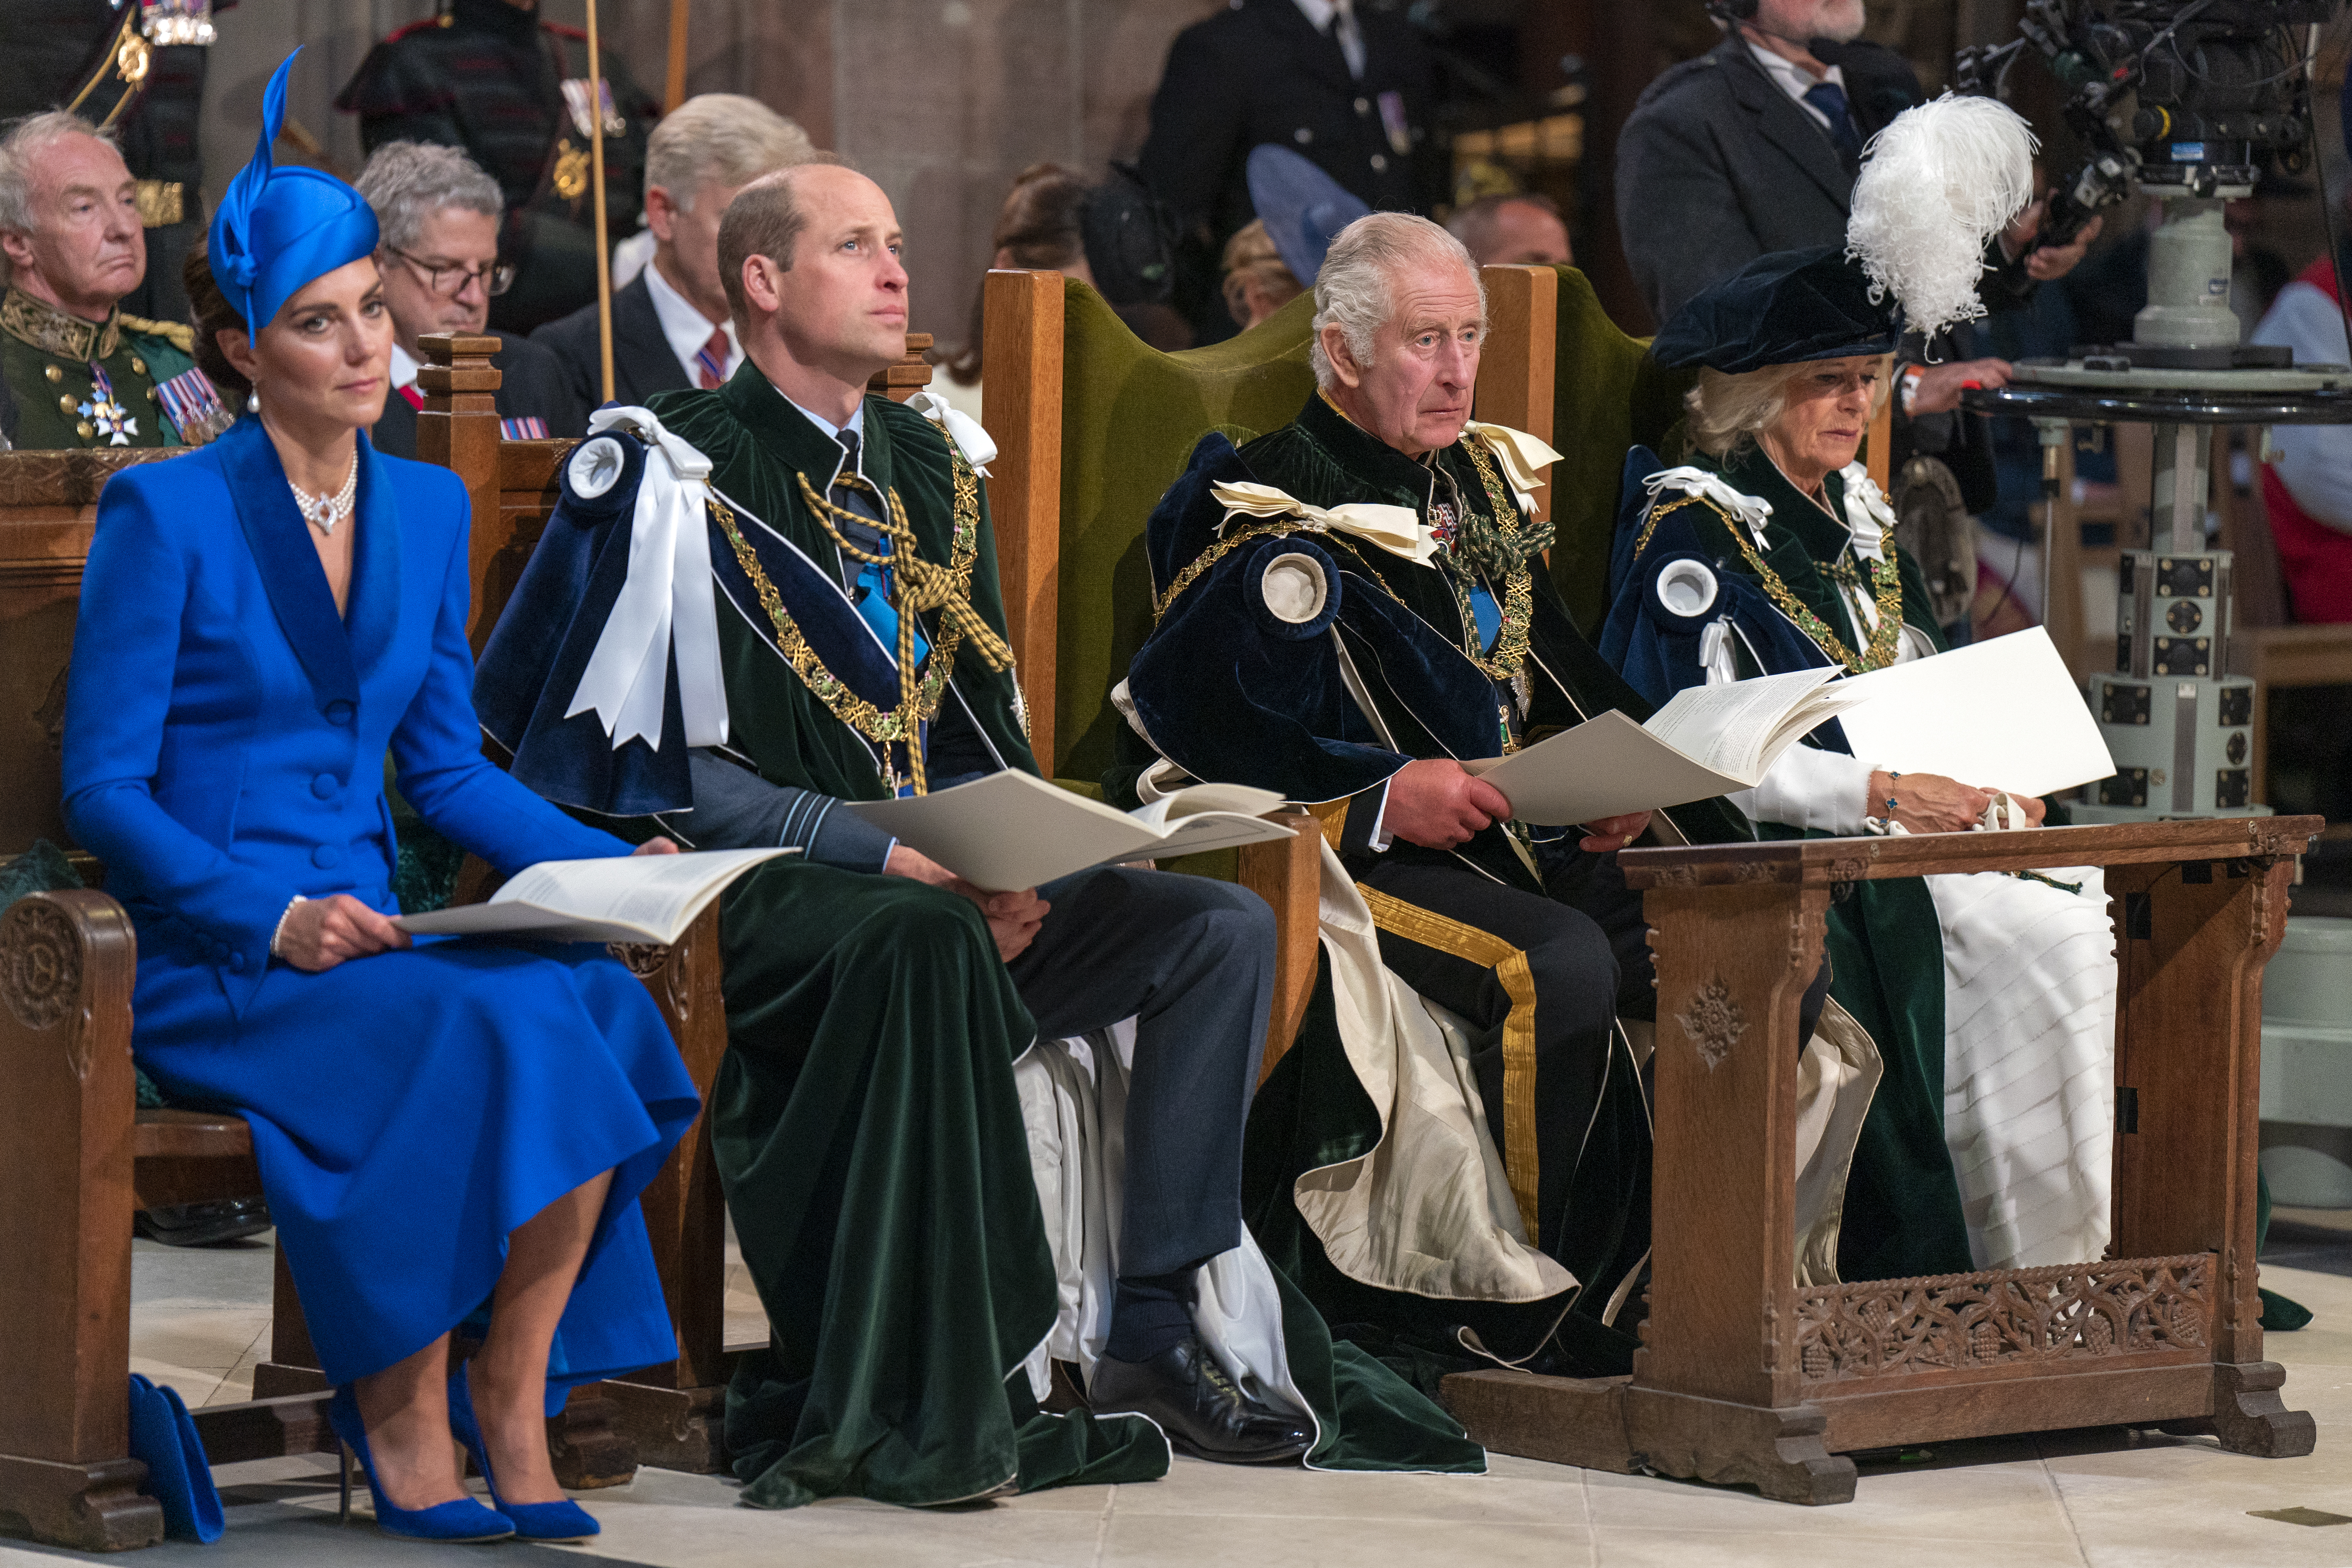 La princesa Catherine, el príncipe William, el rey Charles III y la reina Camilla en el Servicio Nacional de Acción de Gracias y Dedicación al Rey Carlos III y a la Reina Camilla, y la presentación de los Honores de Escocia el 5 de julio de 2023 en Edimburgo, Escocia | Foto: Getty Images